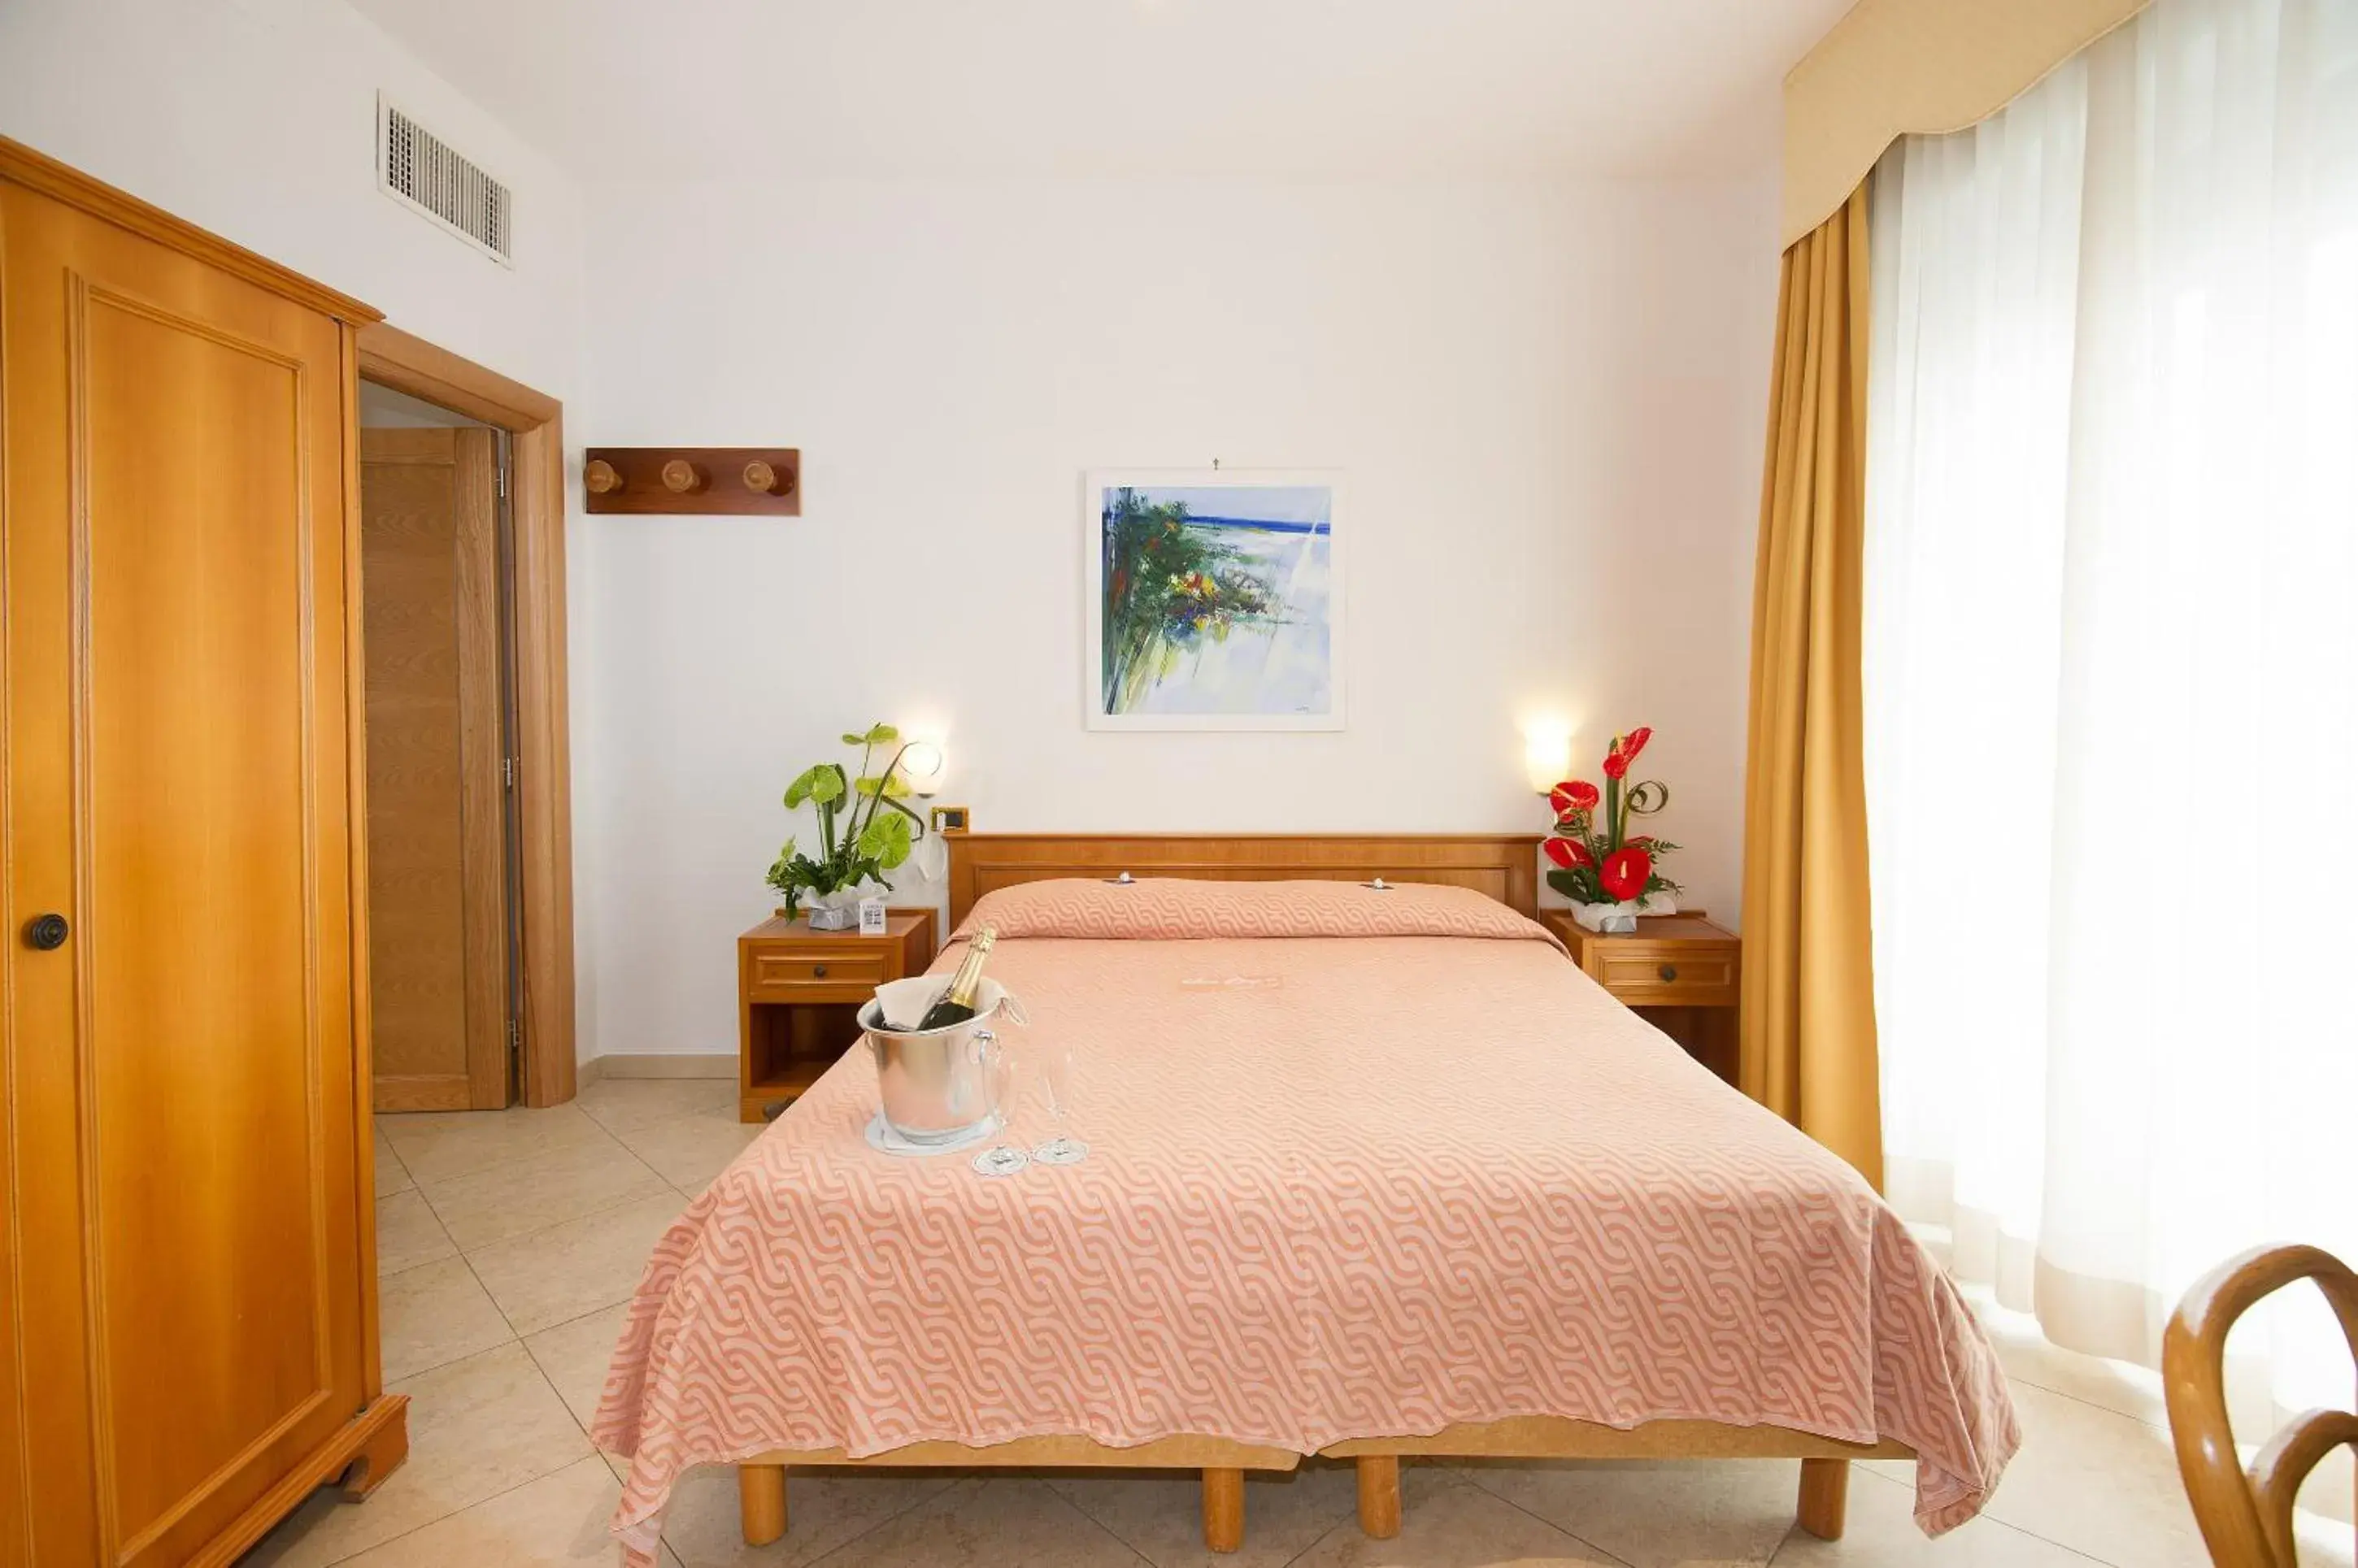 Bed in Joli Park Hotel - Caroli Hotels